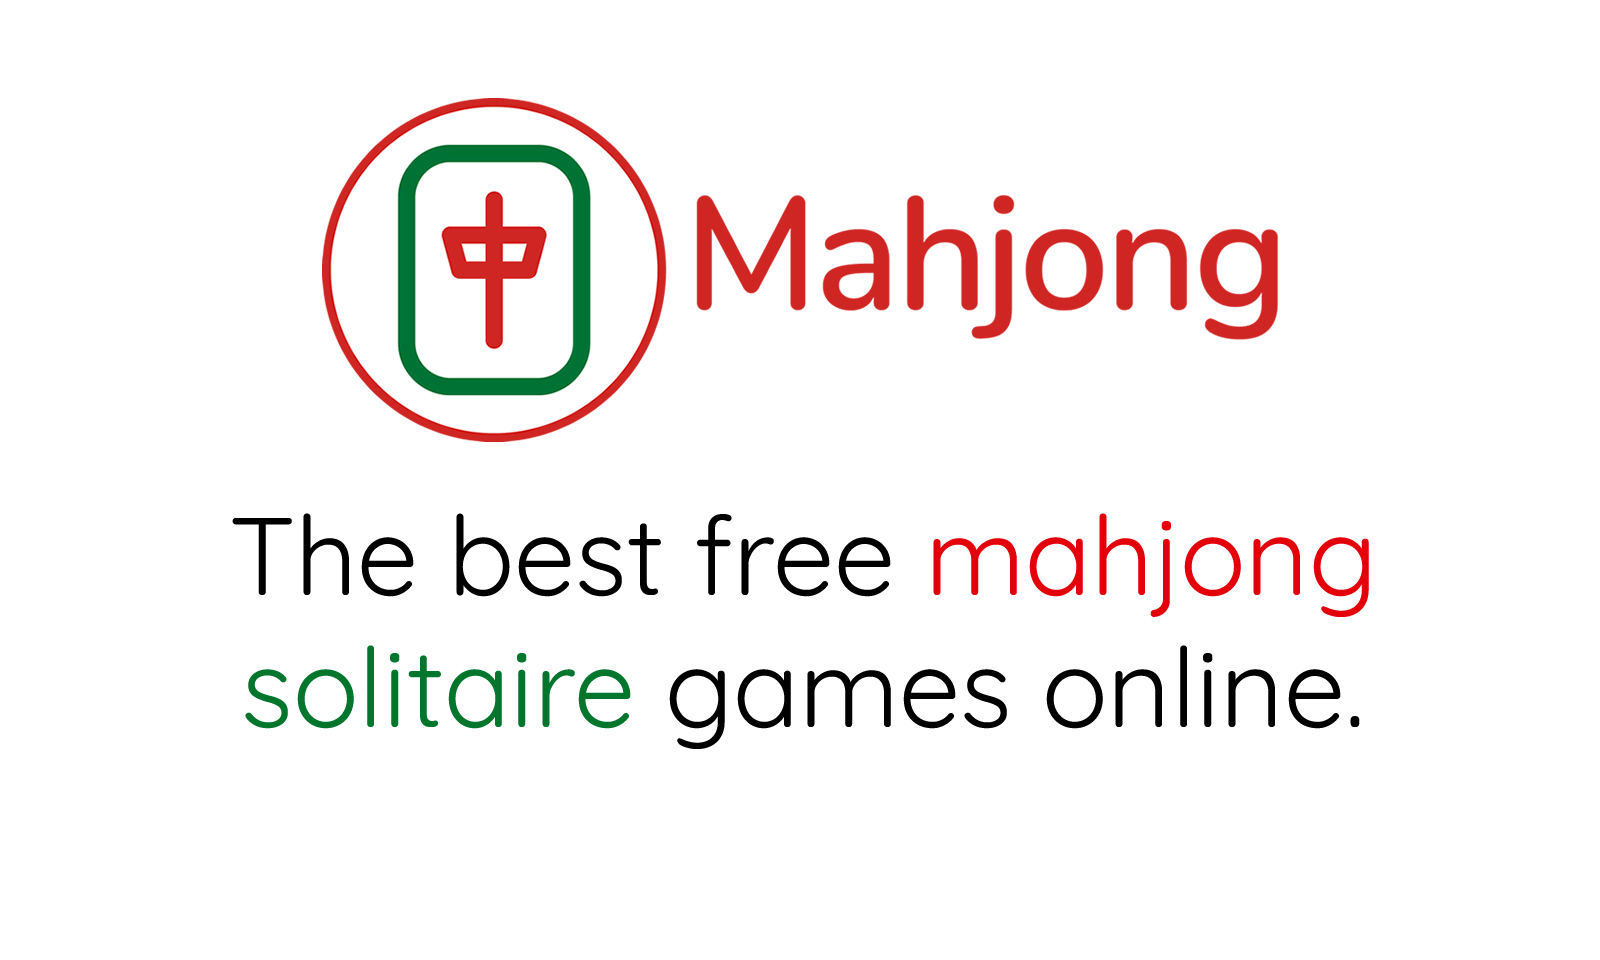 MAHJONG SPELLEN - speel gratis Mahjong spelletjes online!